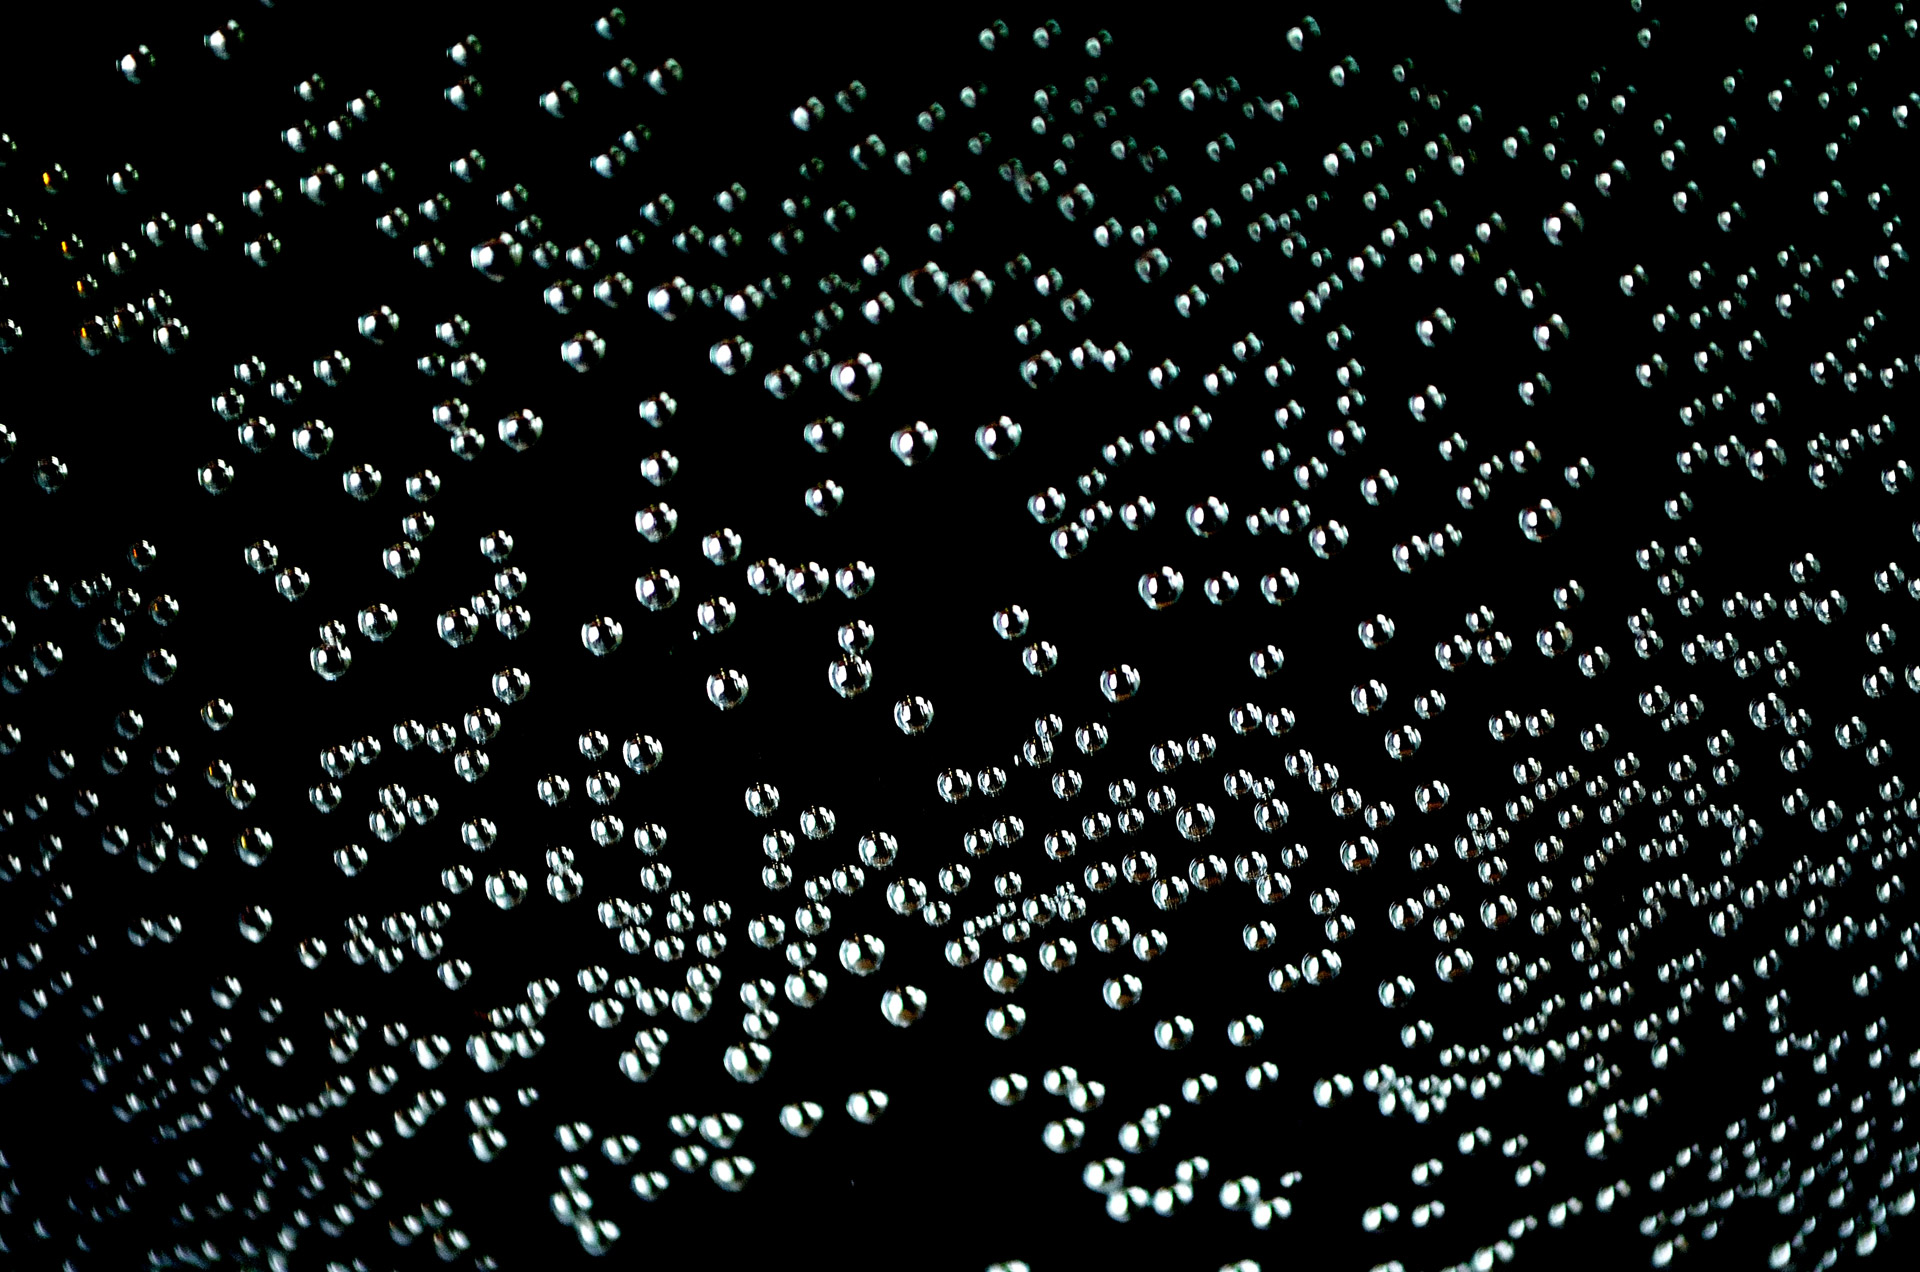 bubbles-in-water.jpg